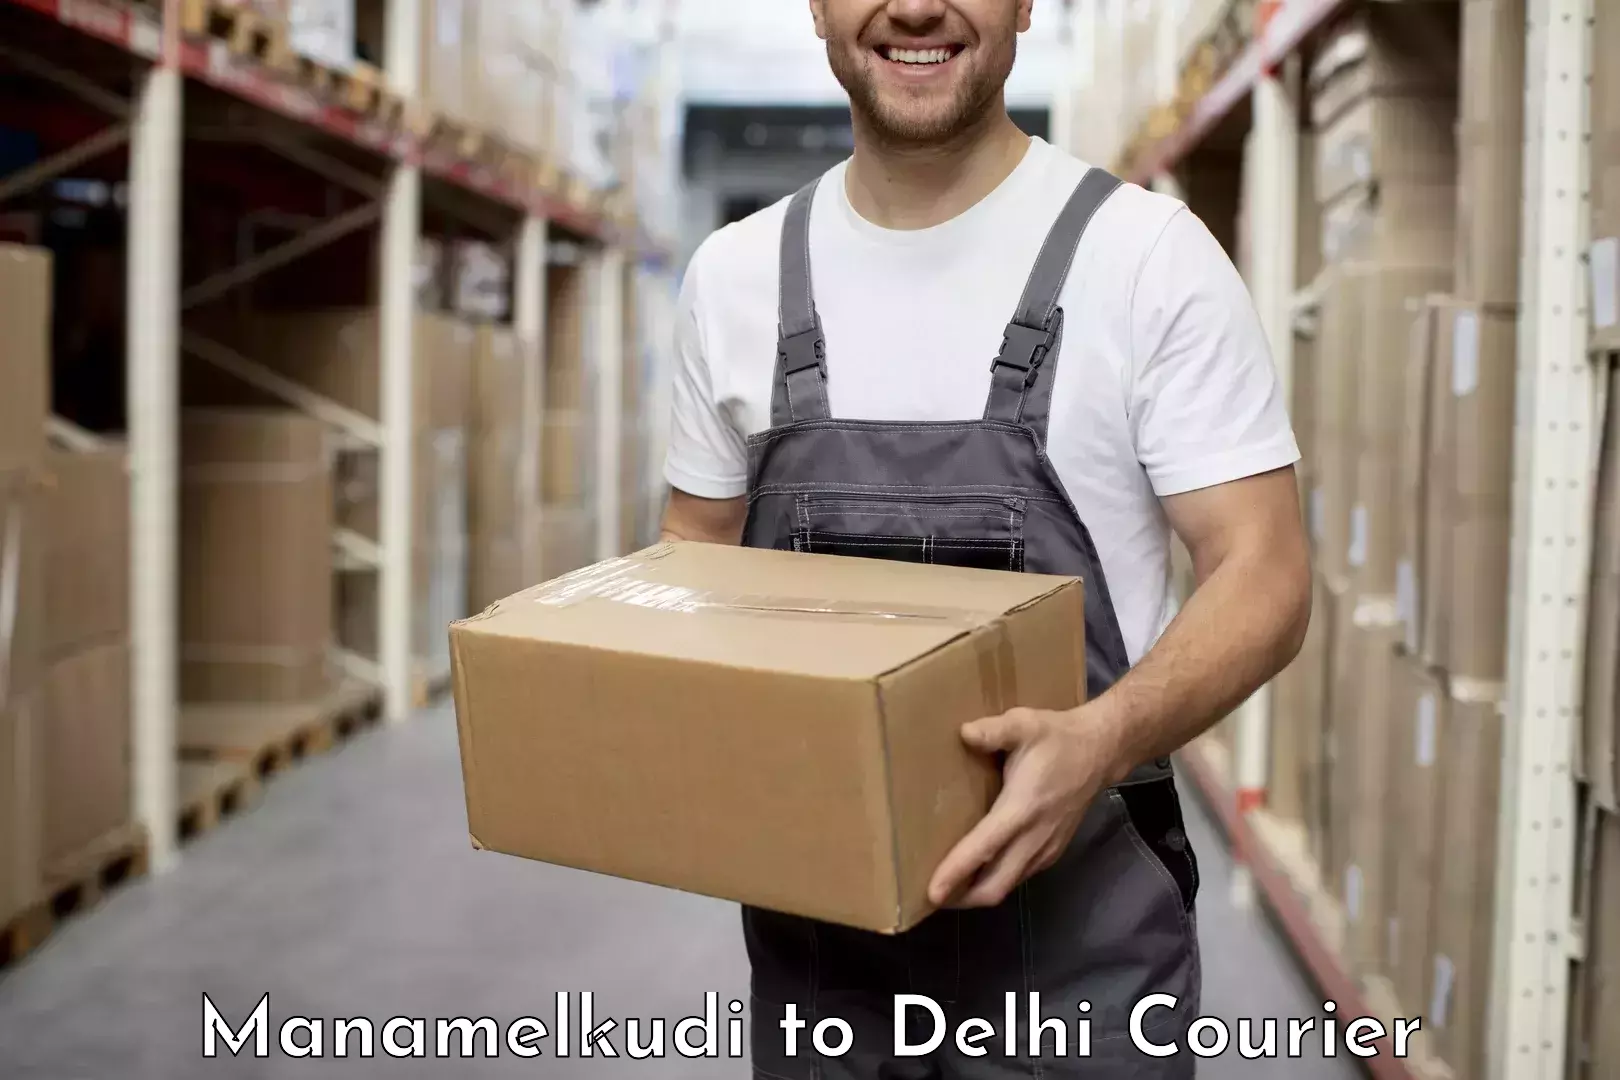 International courier networks Manamelkudi to East Delhi